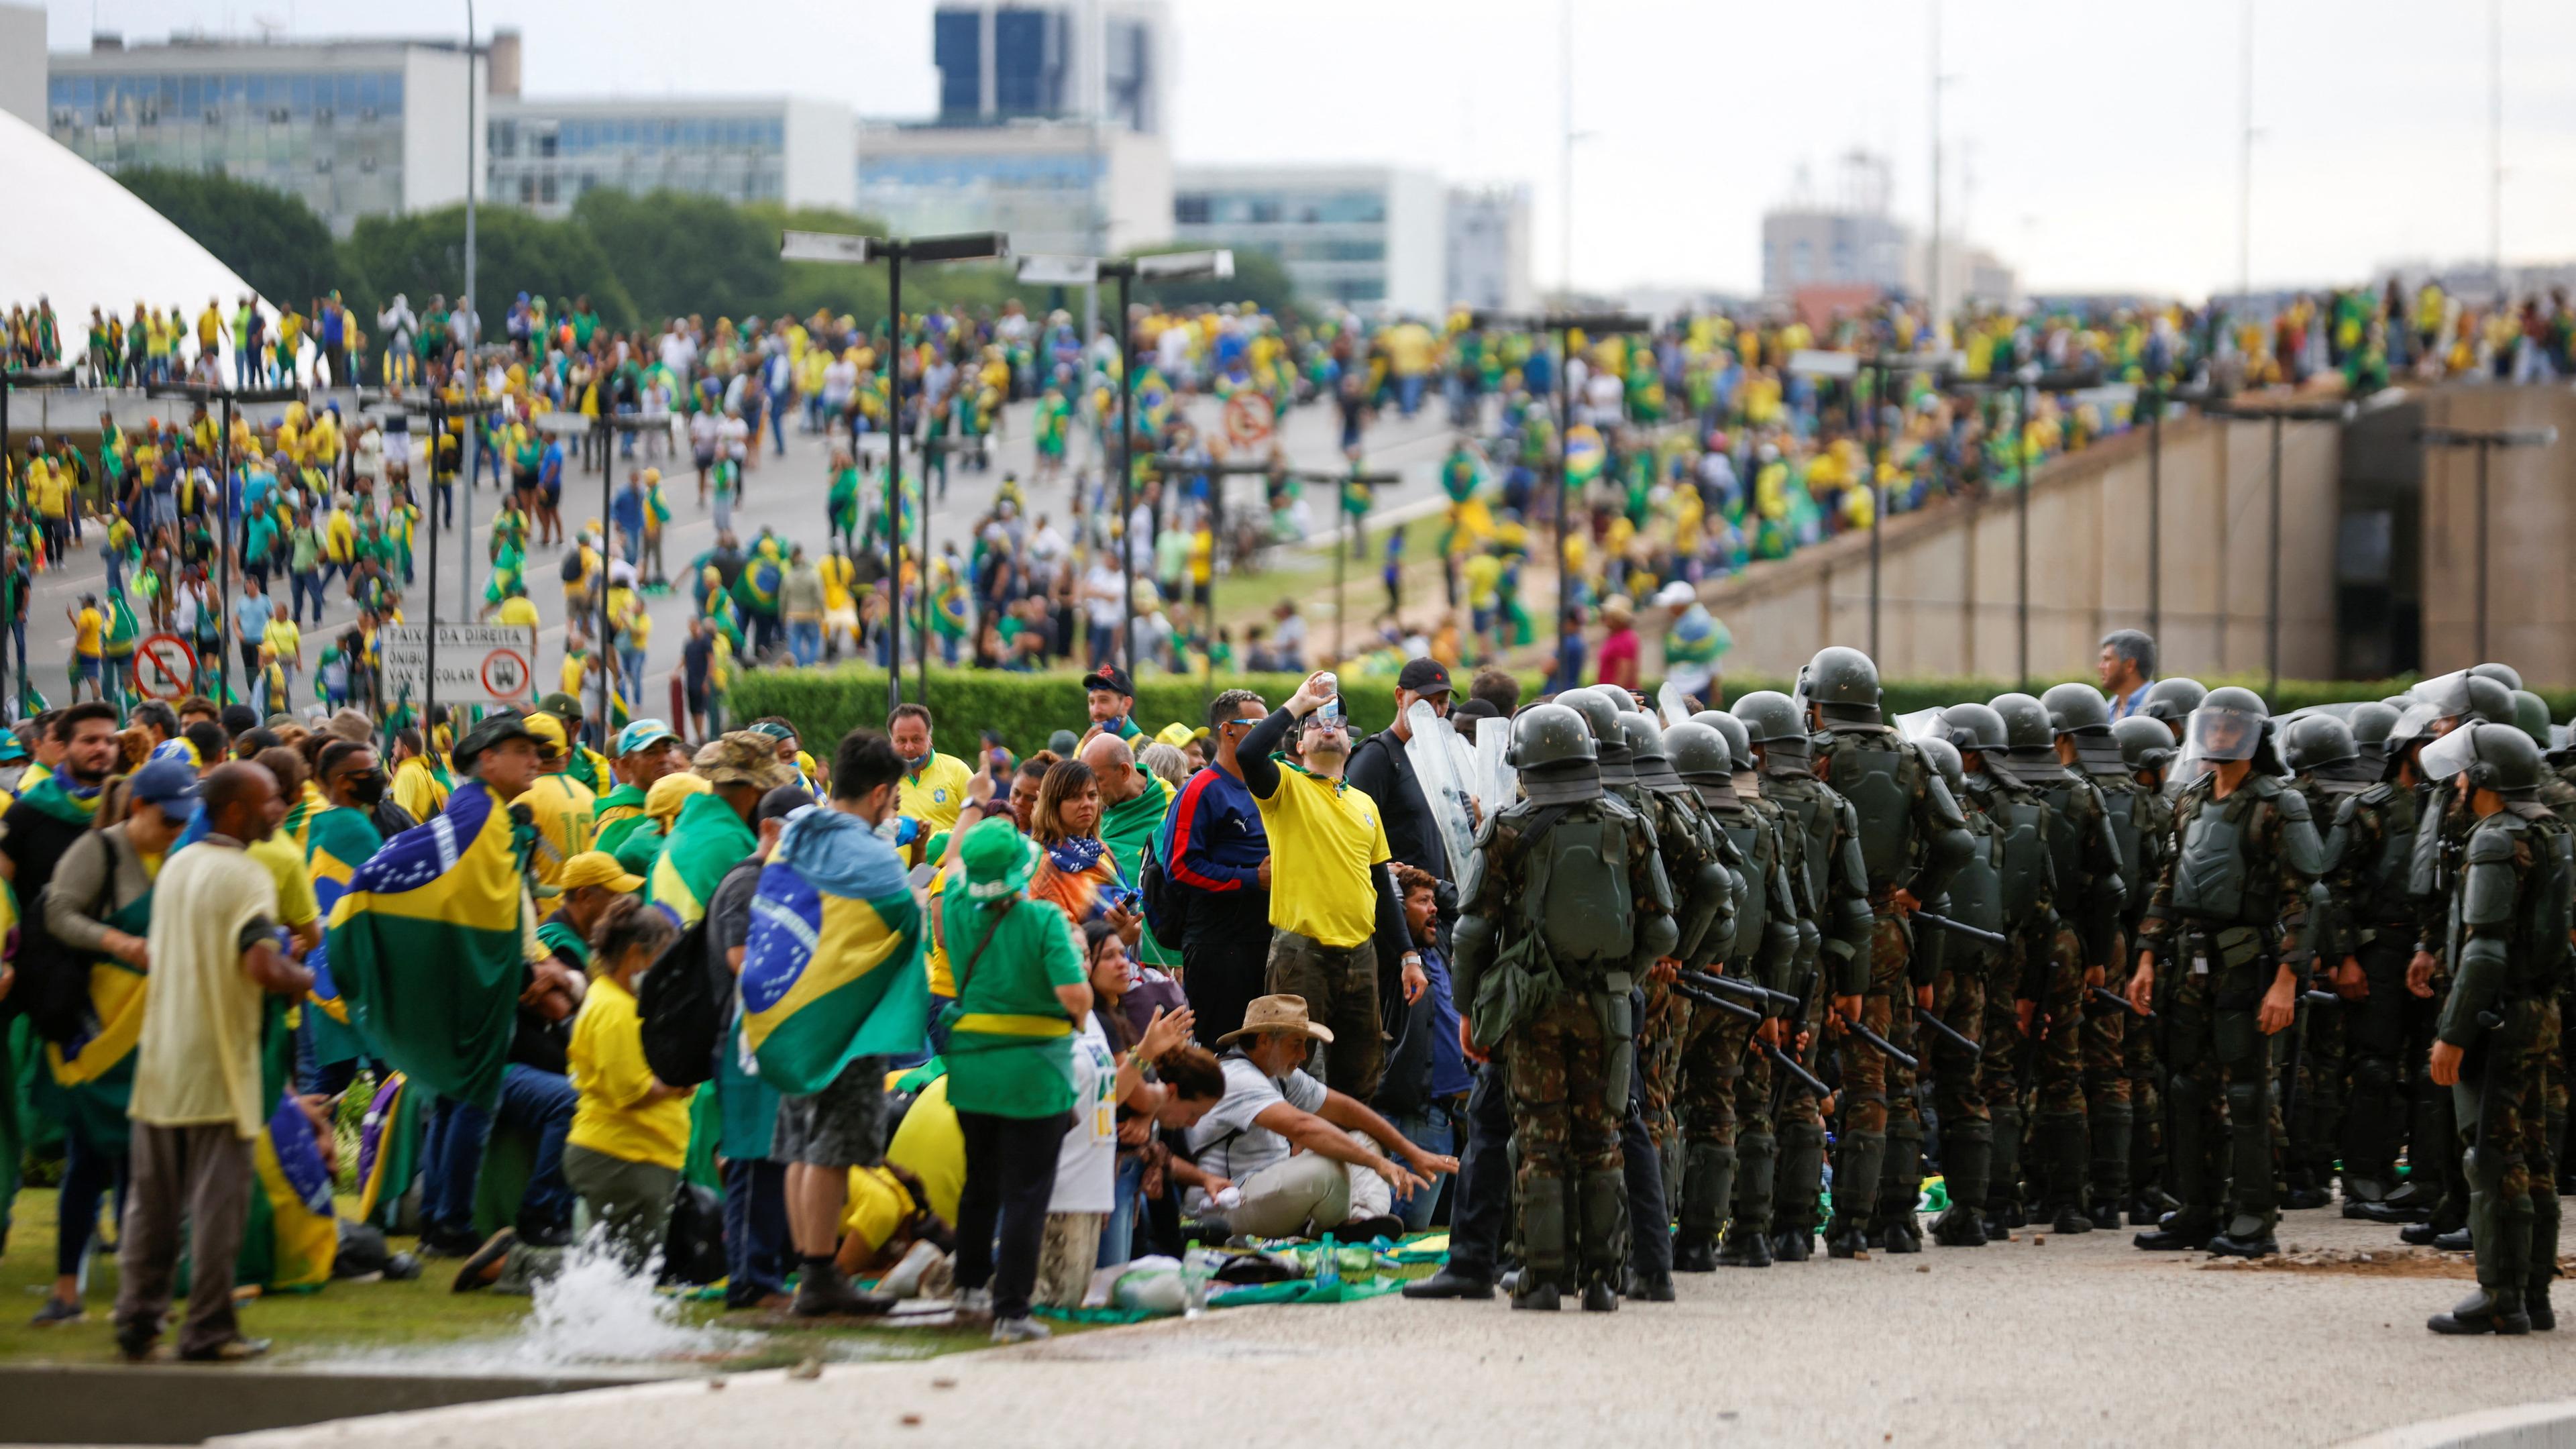 Polizisten in Uniform und Helmen stehen Protestierenden mit Brasilien Flaggen gegenüber.